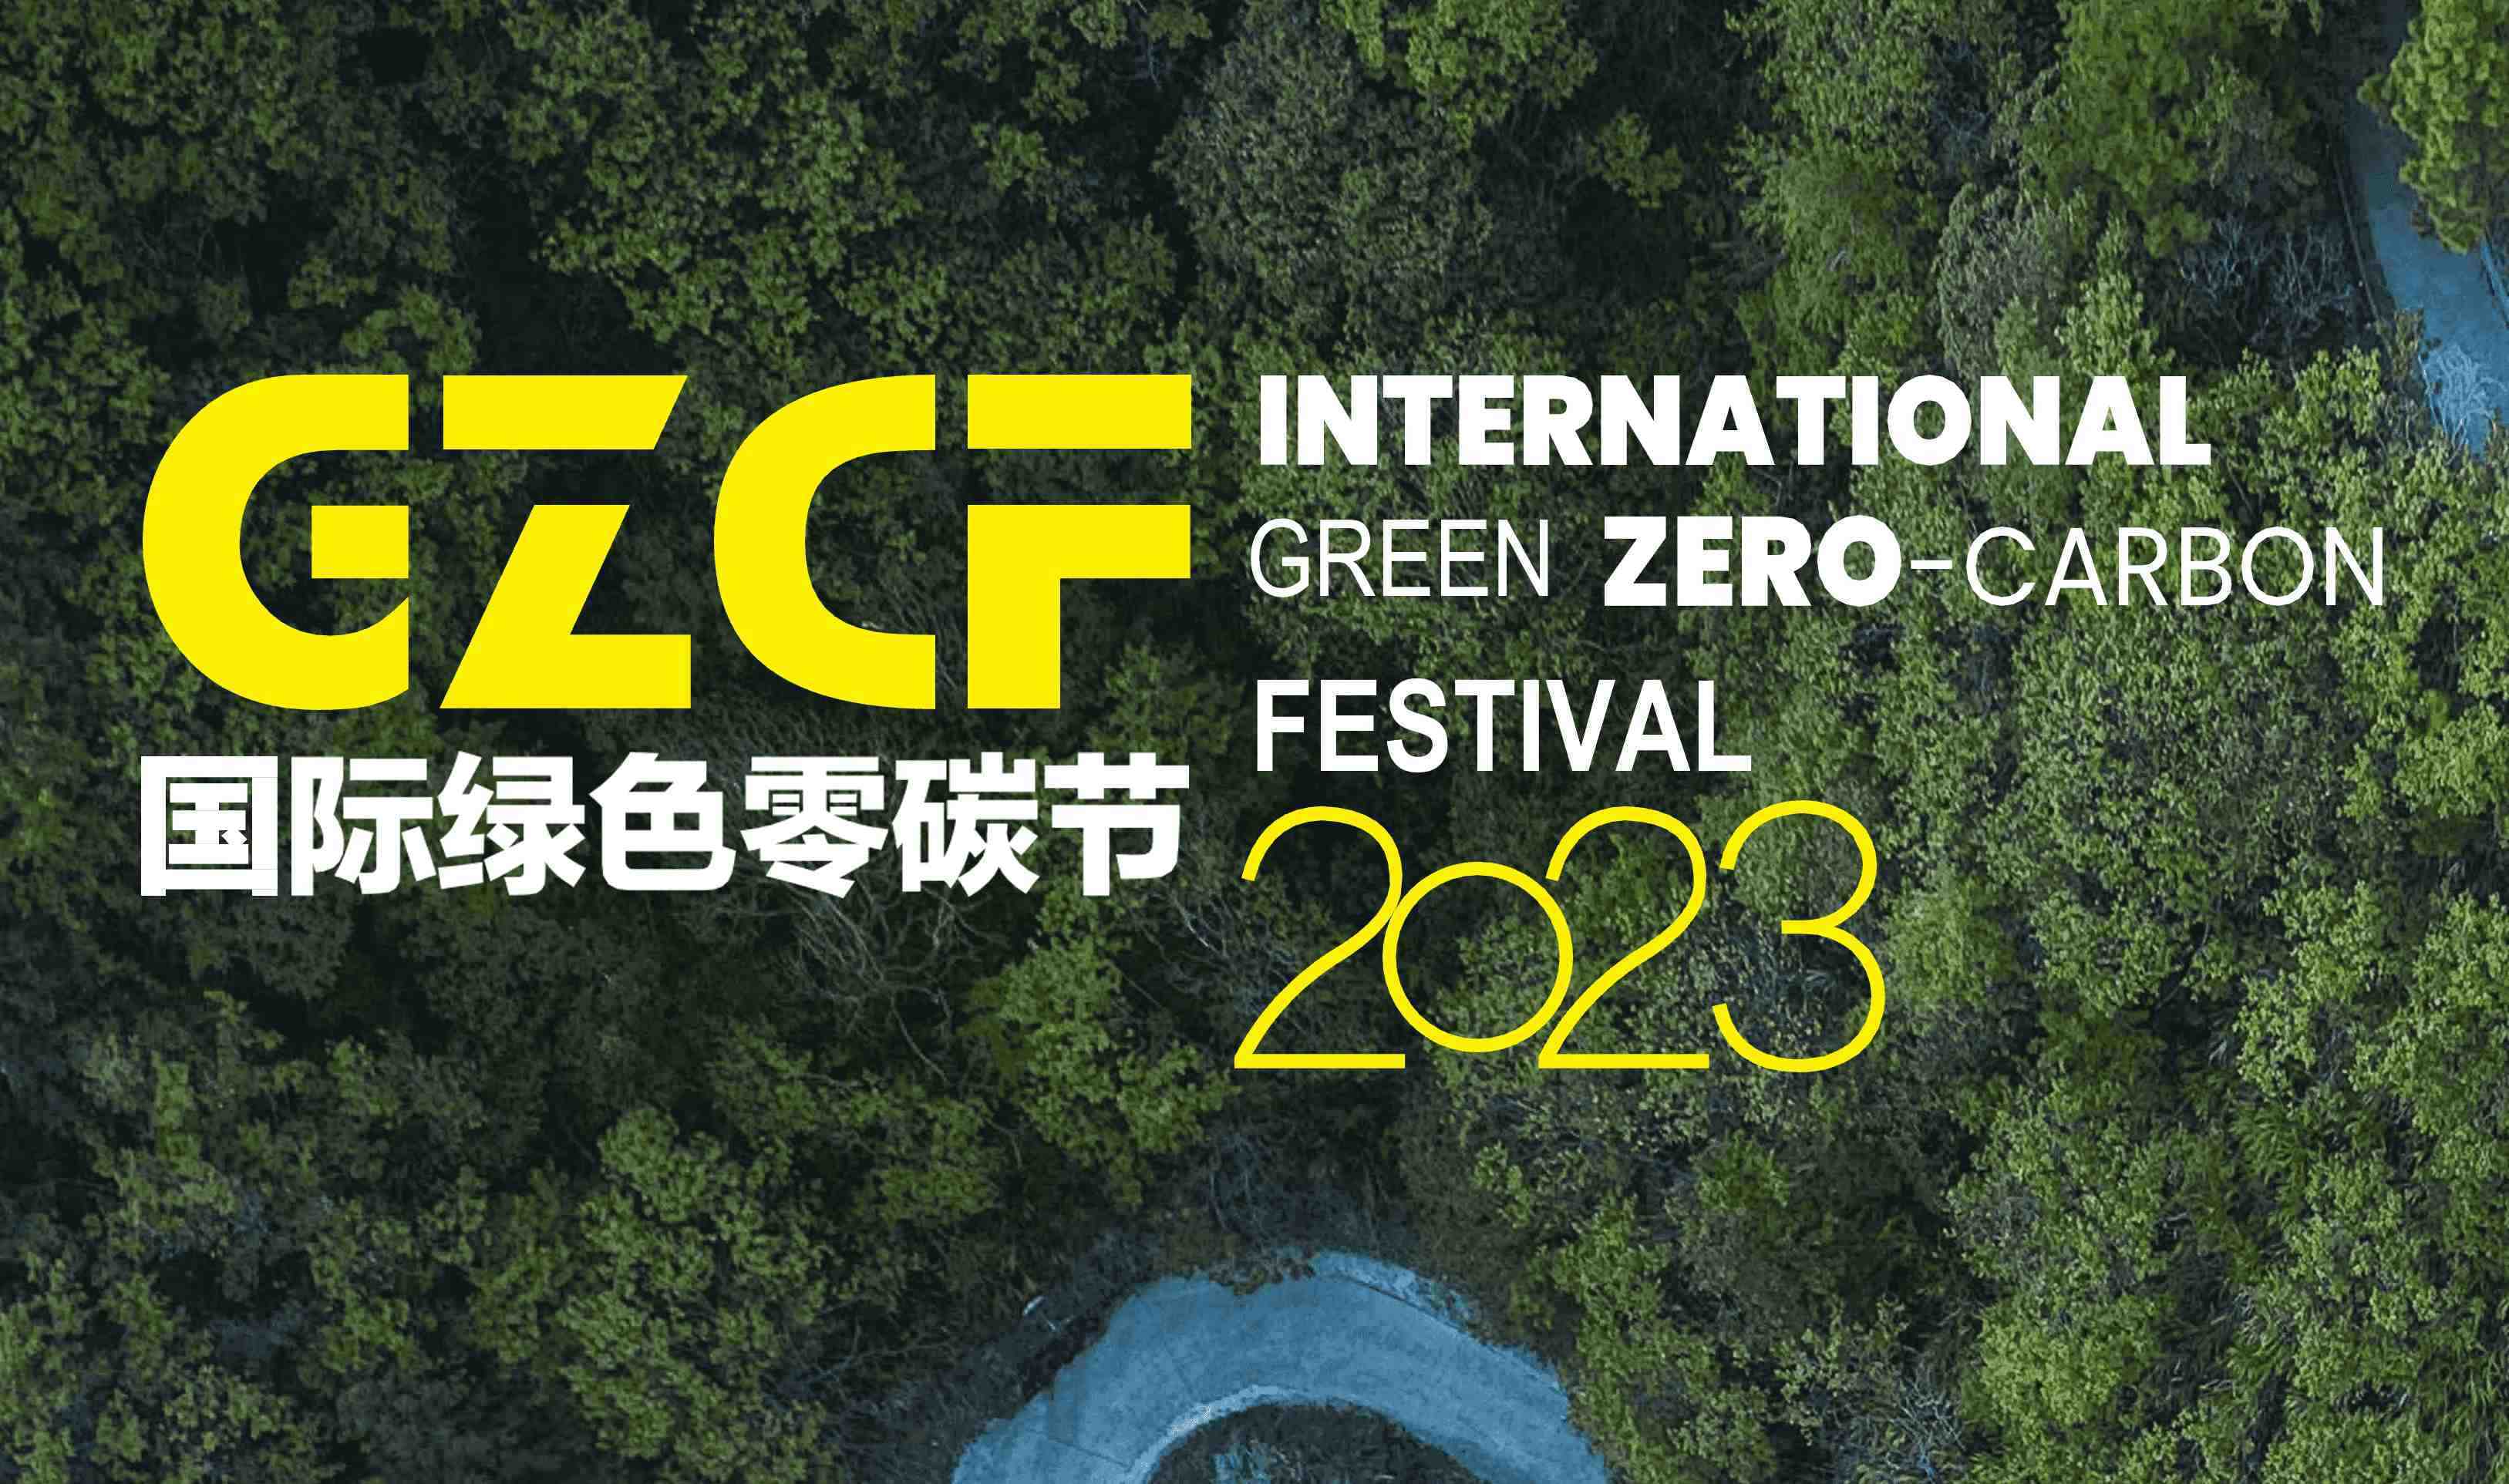 妙抗保荣膺2023国际绿色零碳节绿色可持续发展贡献奖